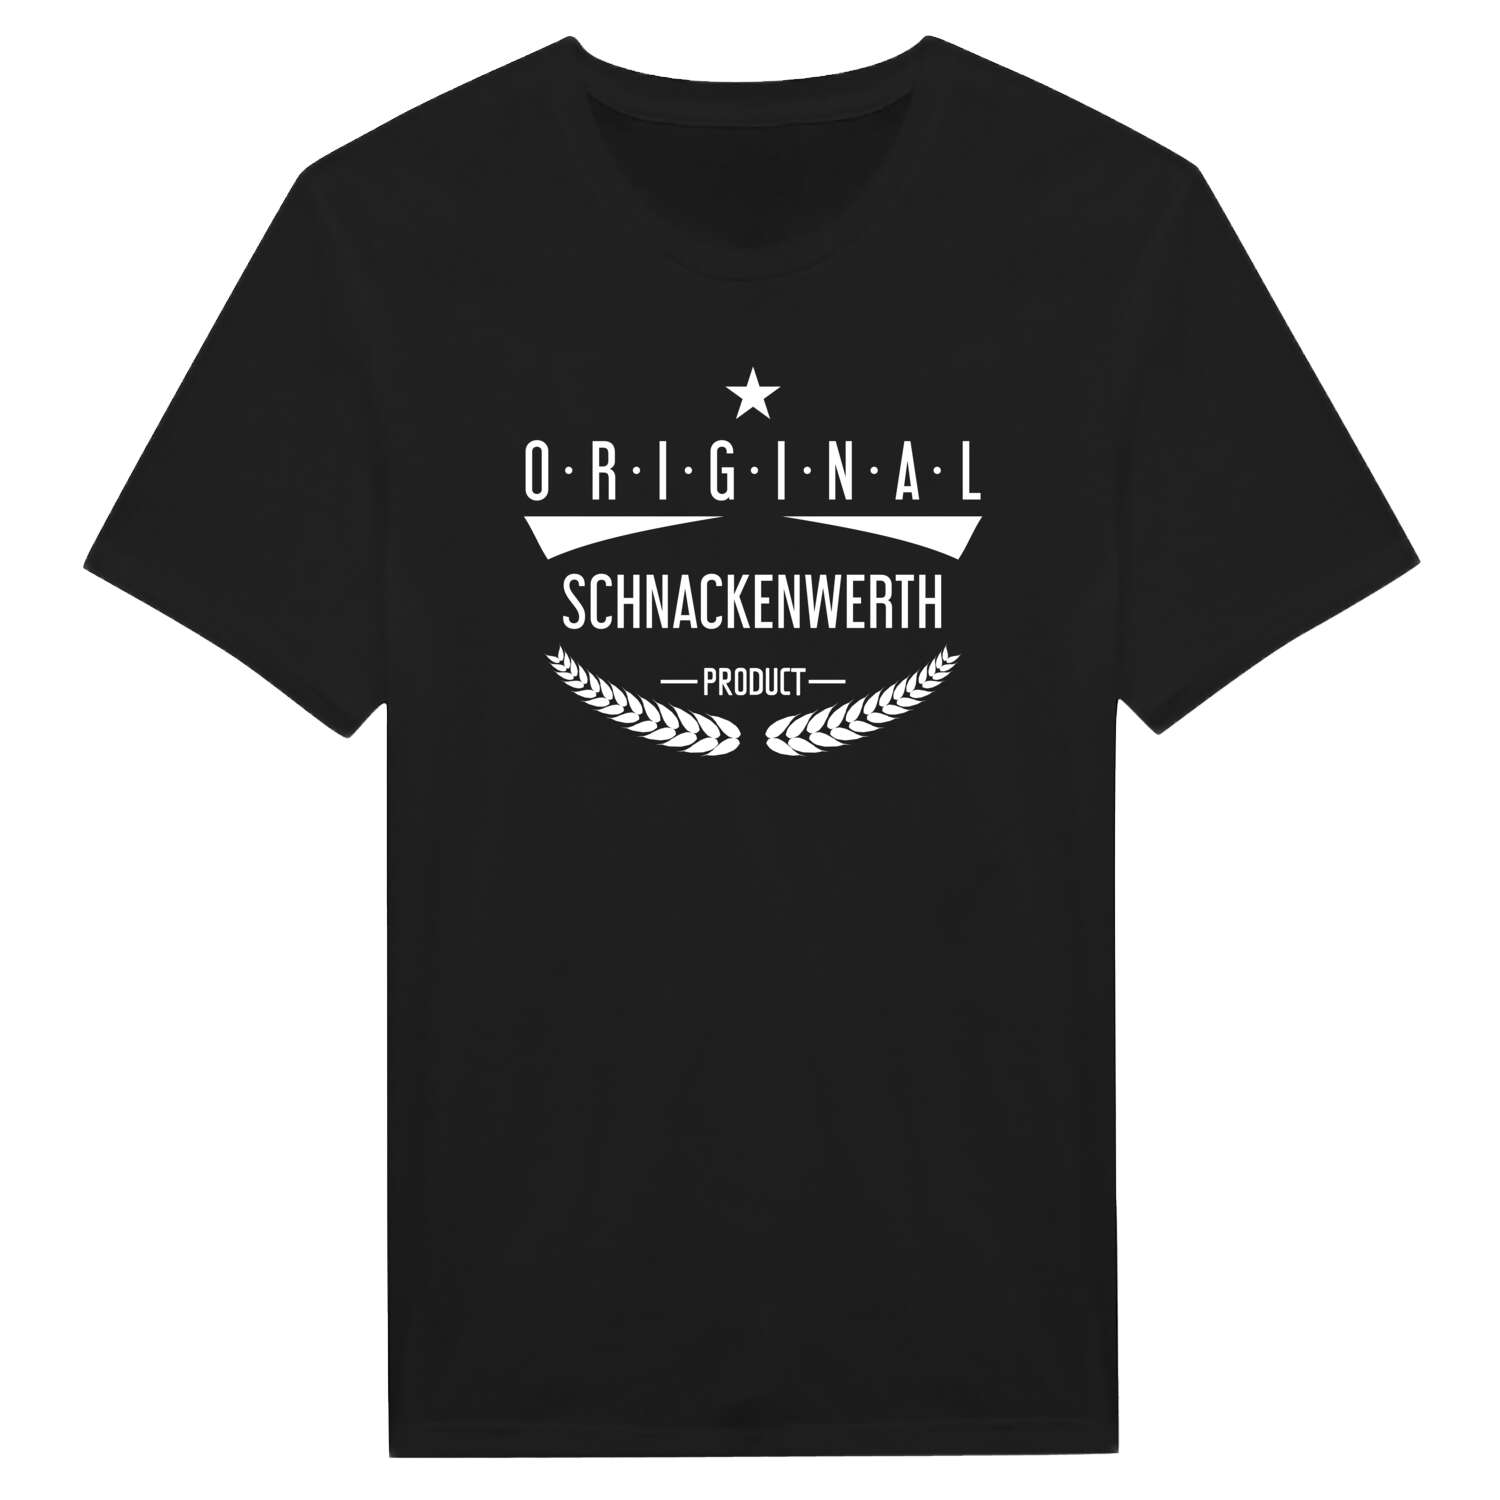 Schnackenwerth T-Shirt »Original Product«